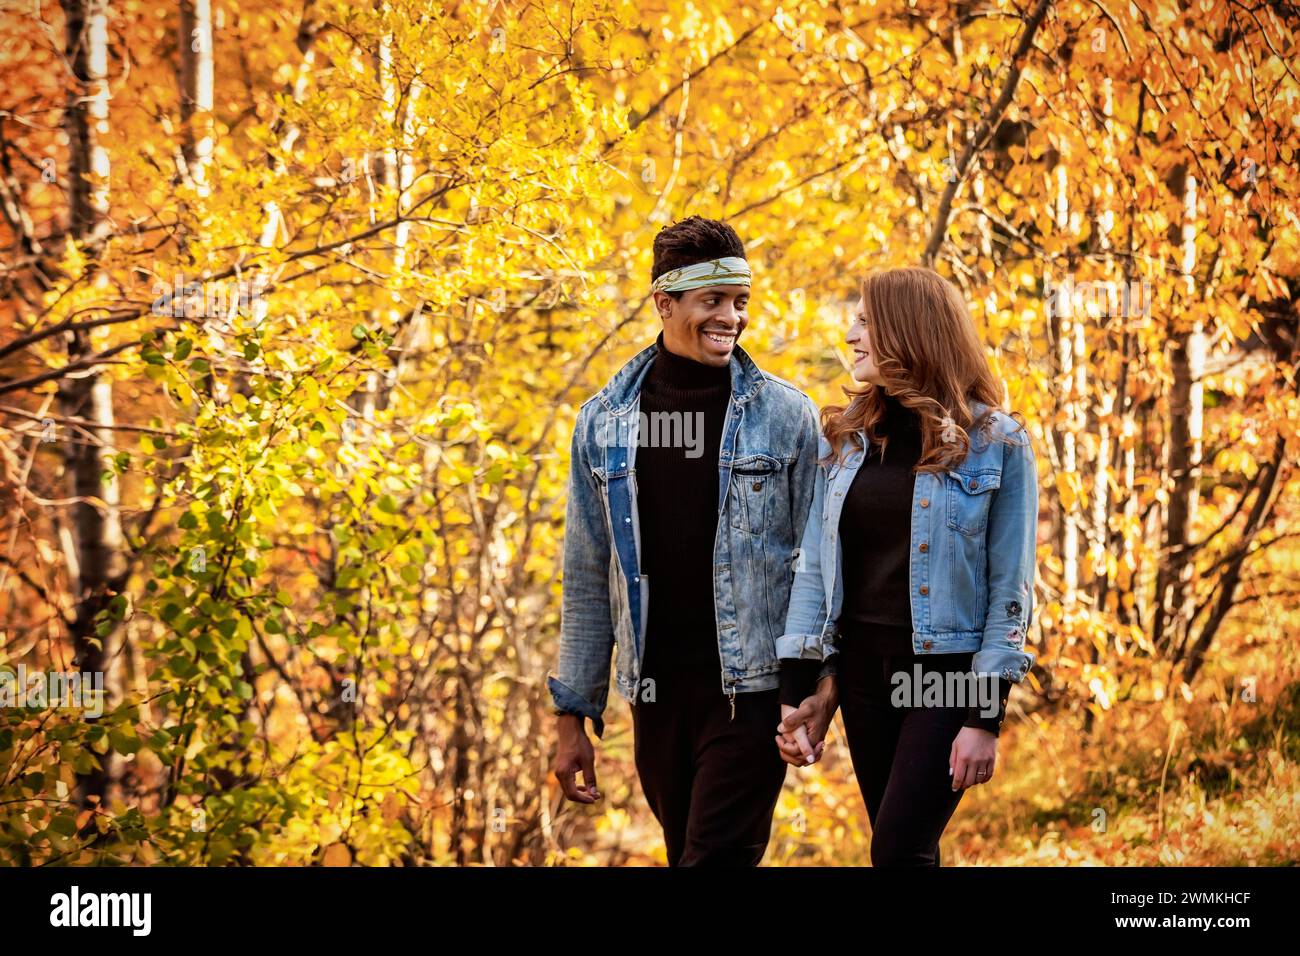 Nahaufnahme einer gemischten Rasse verheiratete Paare, die sich gegenseitig anlächeln, während eines Familienausflugs im Herbst durch einen Stadtpark spazieren gehen und gute Zeit miteinander verbringen Stockfoto